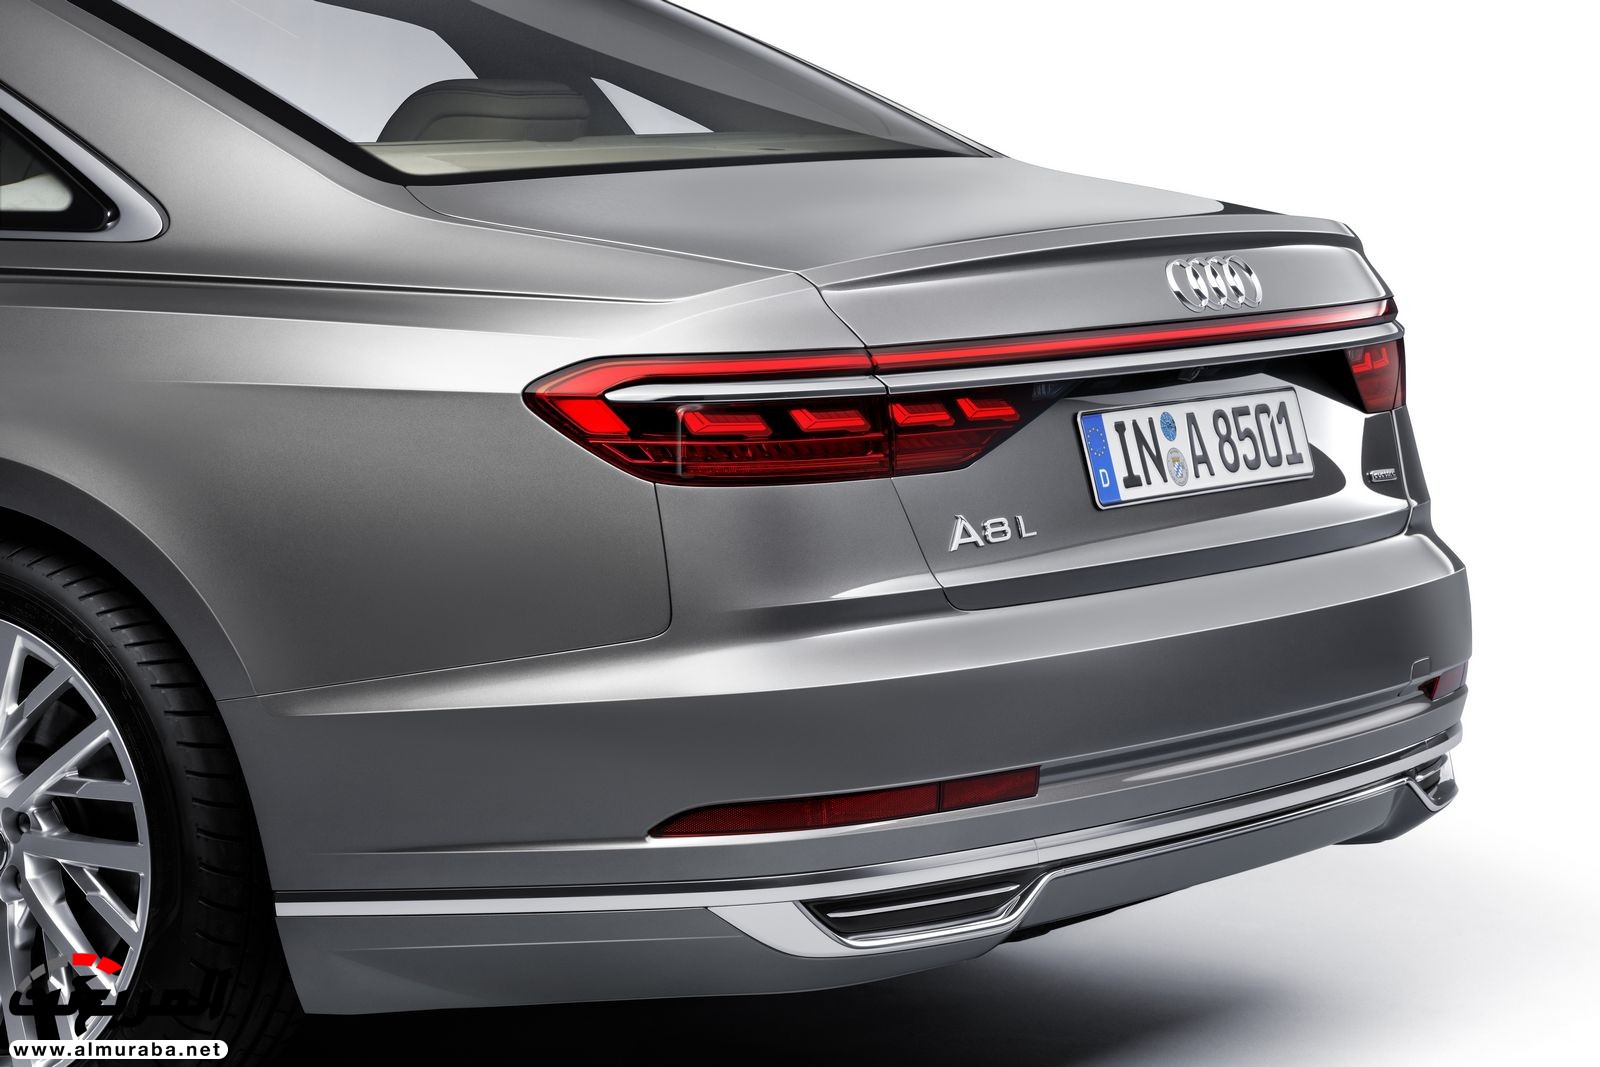 أودي A8 2018 الجديدة كلياً تكشف نفسها بتصميم وتقنيات متطورة "معلومات + 100 صورة" Audi A8 34